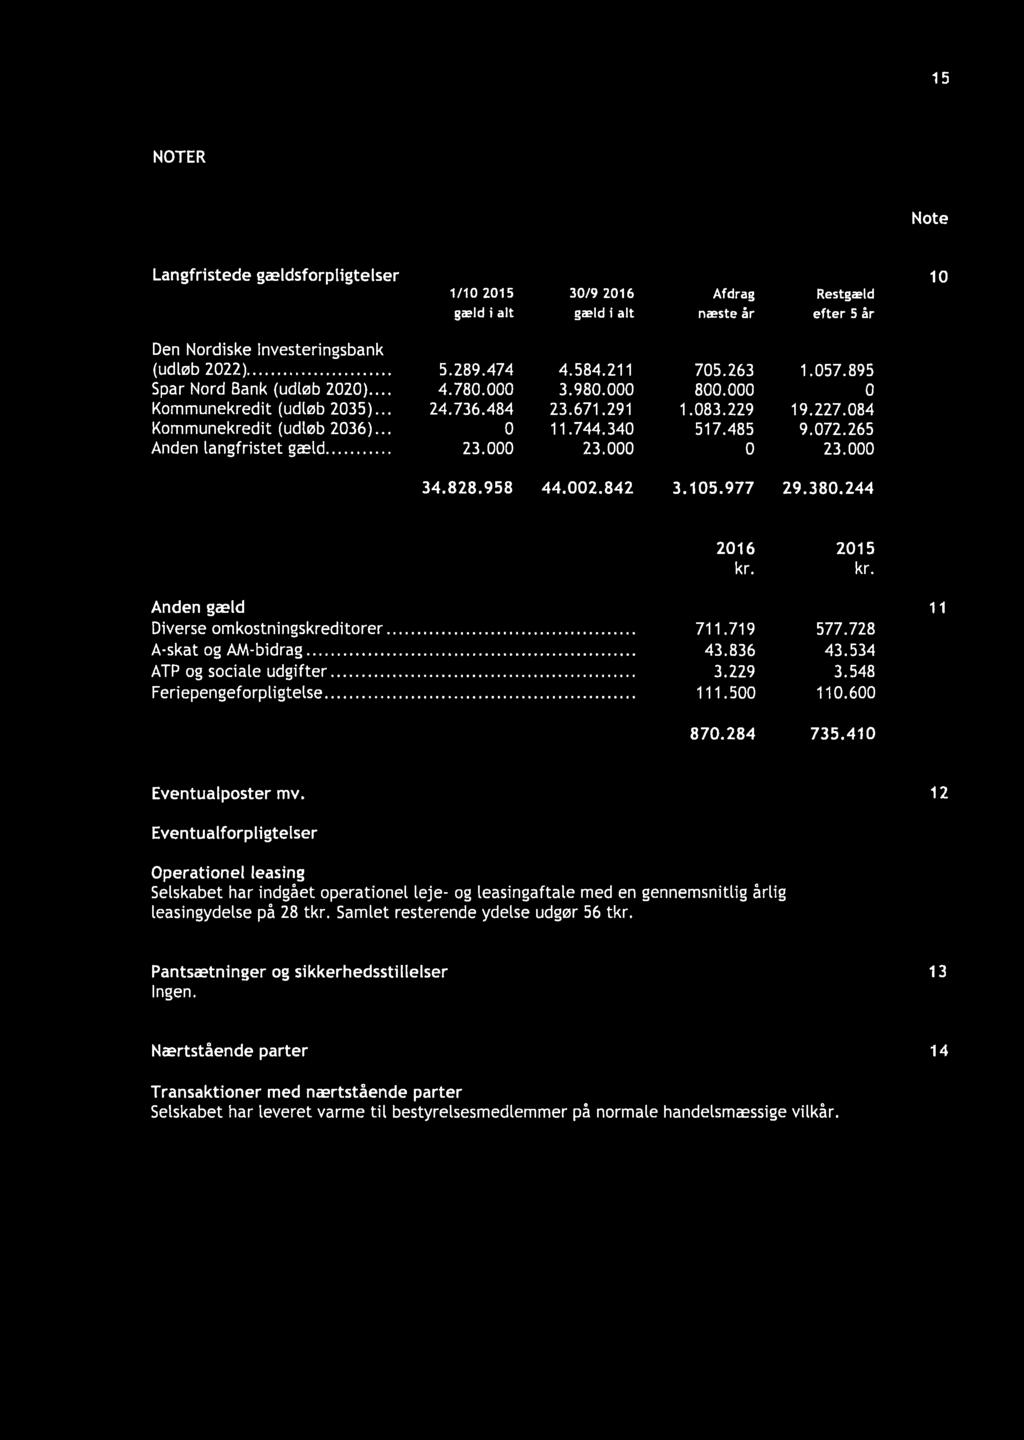 072.265 Anden langfristet gæld... 23.000 23.000 23.000 34.828.958 44.002.842 3.105.977 29.380.244 2016 2015 Anden gæld Diverse omkostningskreditorer. A skat og AM-bidrag. ATP og sociale udgifter.